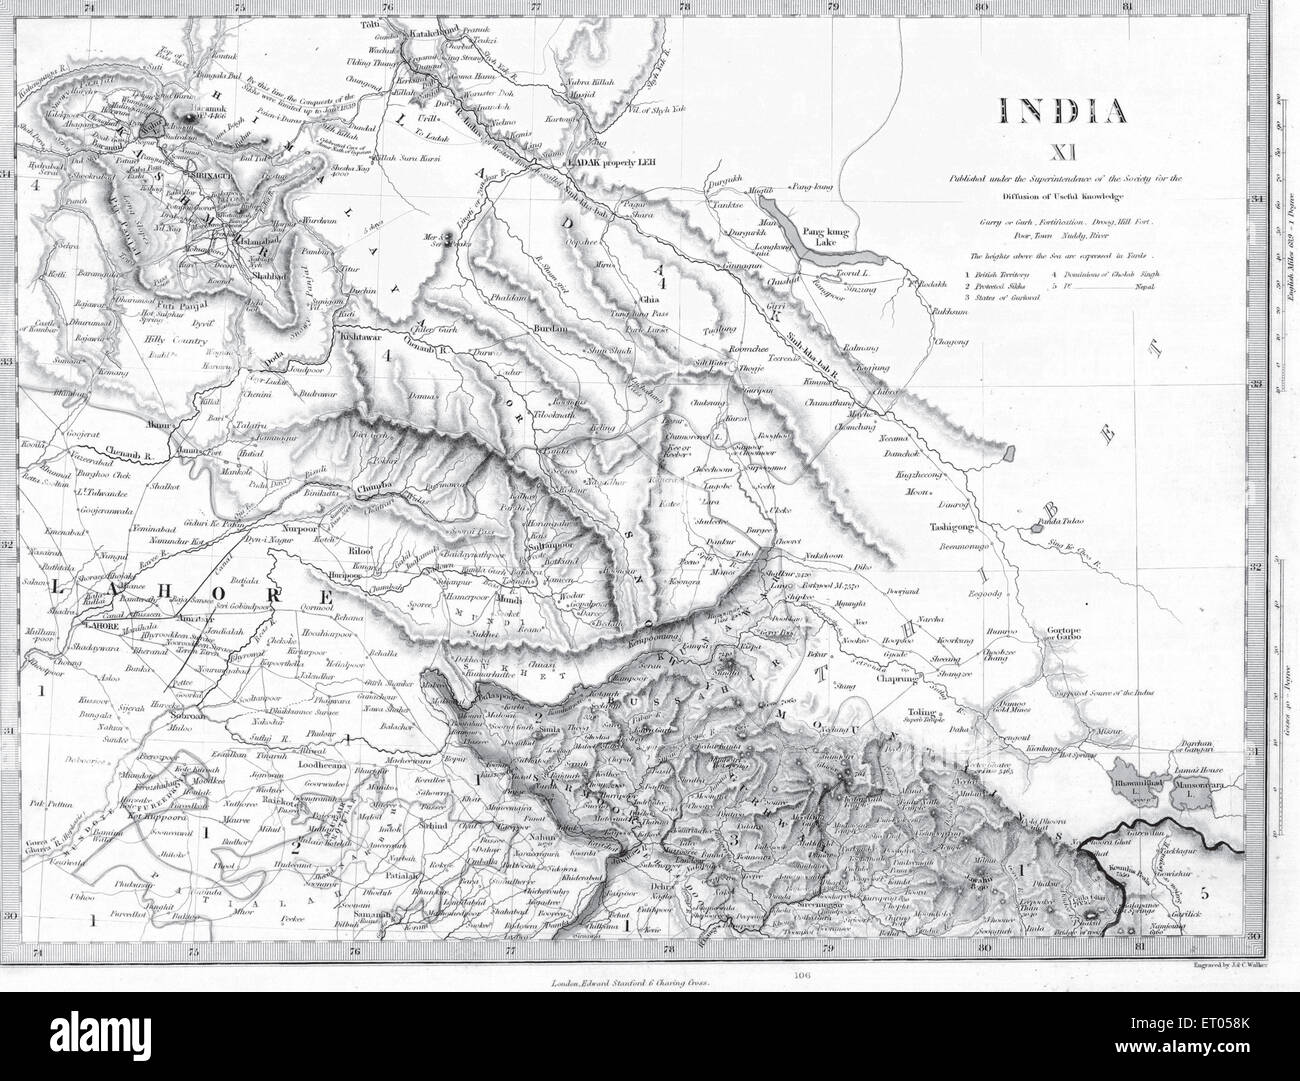 Un mapa de la India para la difusión de conocimientos útiles Foto de stock